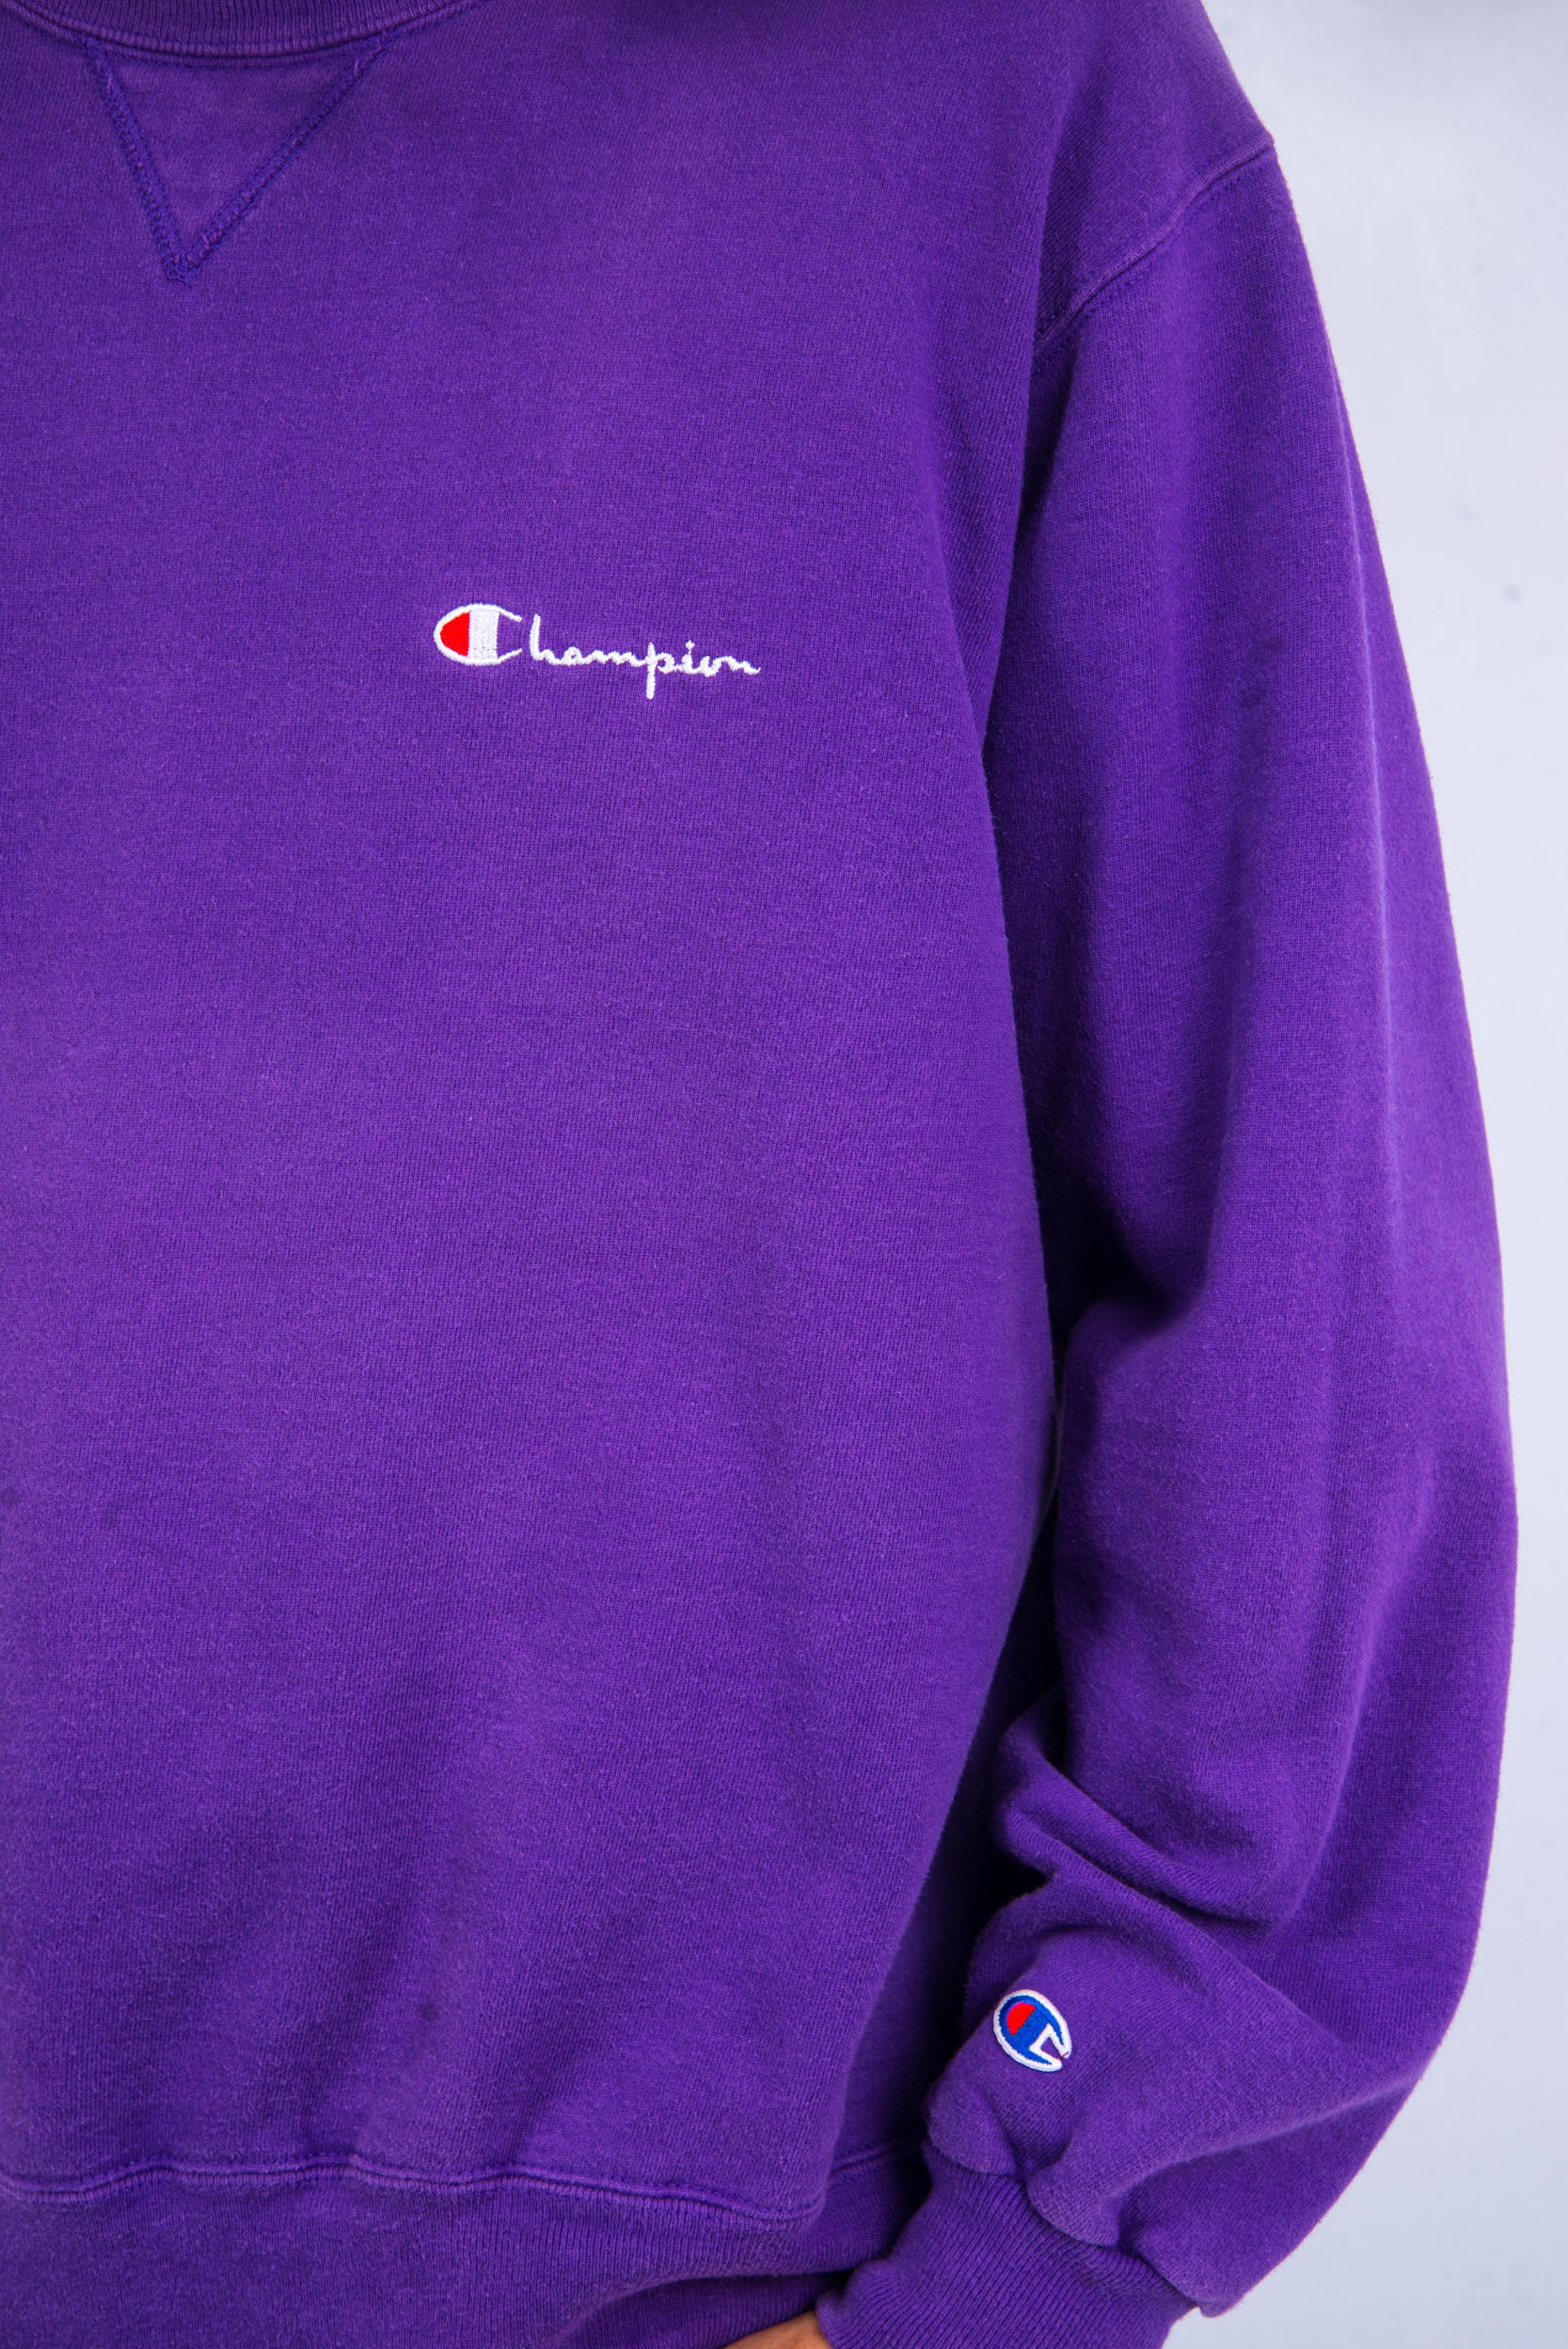 90's Vintage Purple Champion Sweatshirt – The Vintage Scene